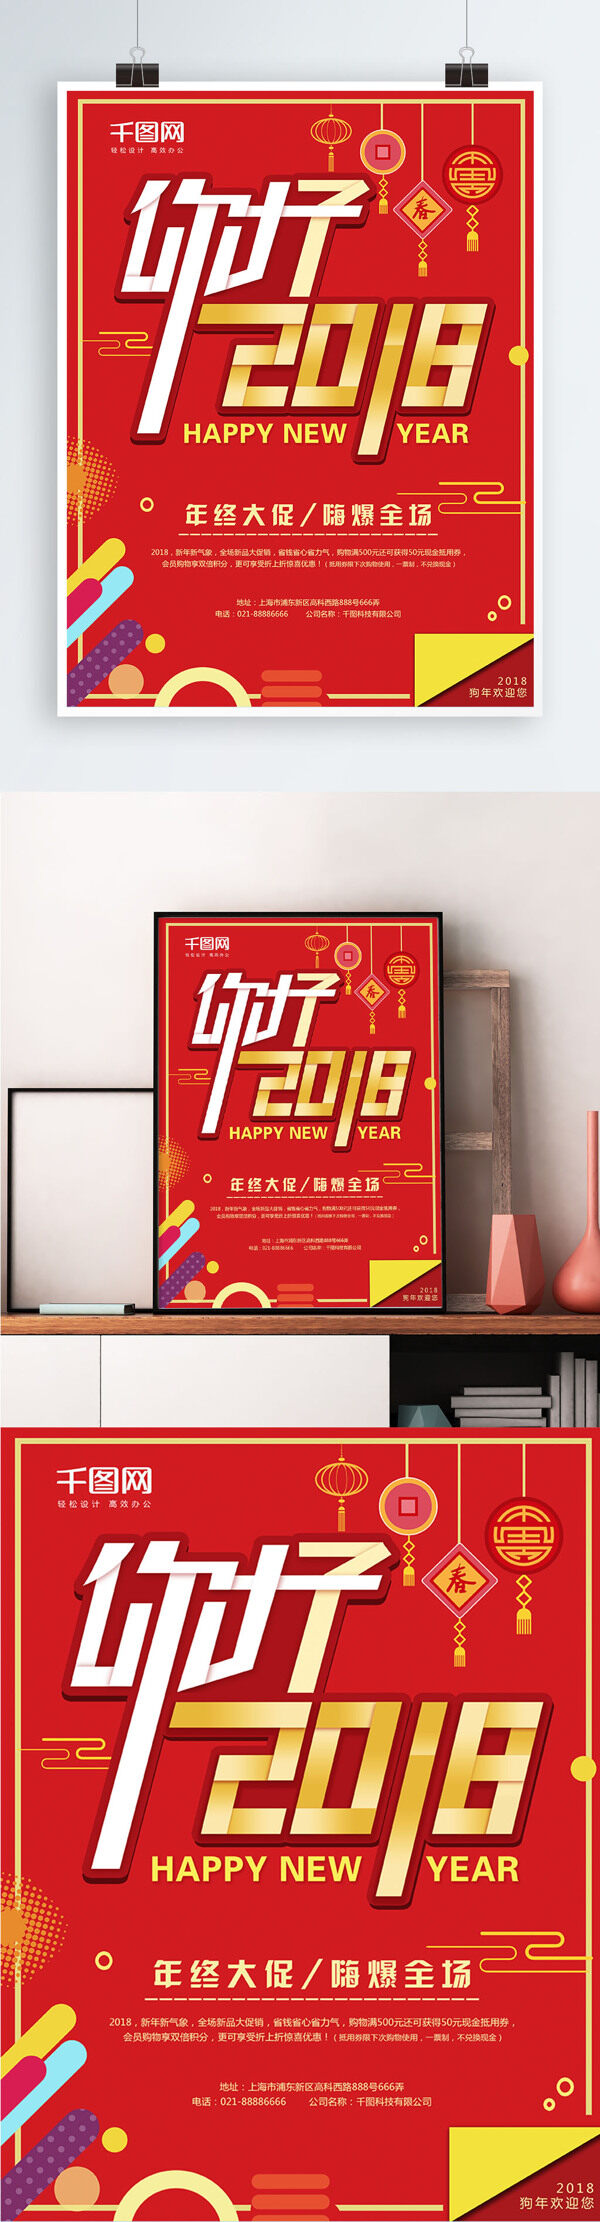 你好2018红色简约创意节日海报设计